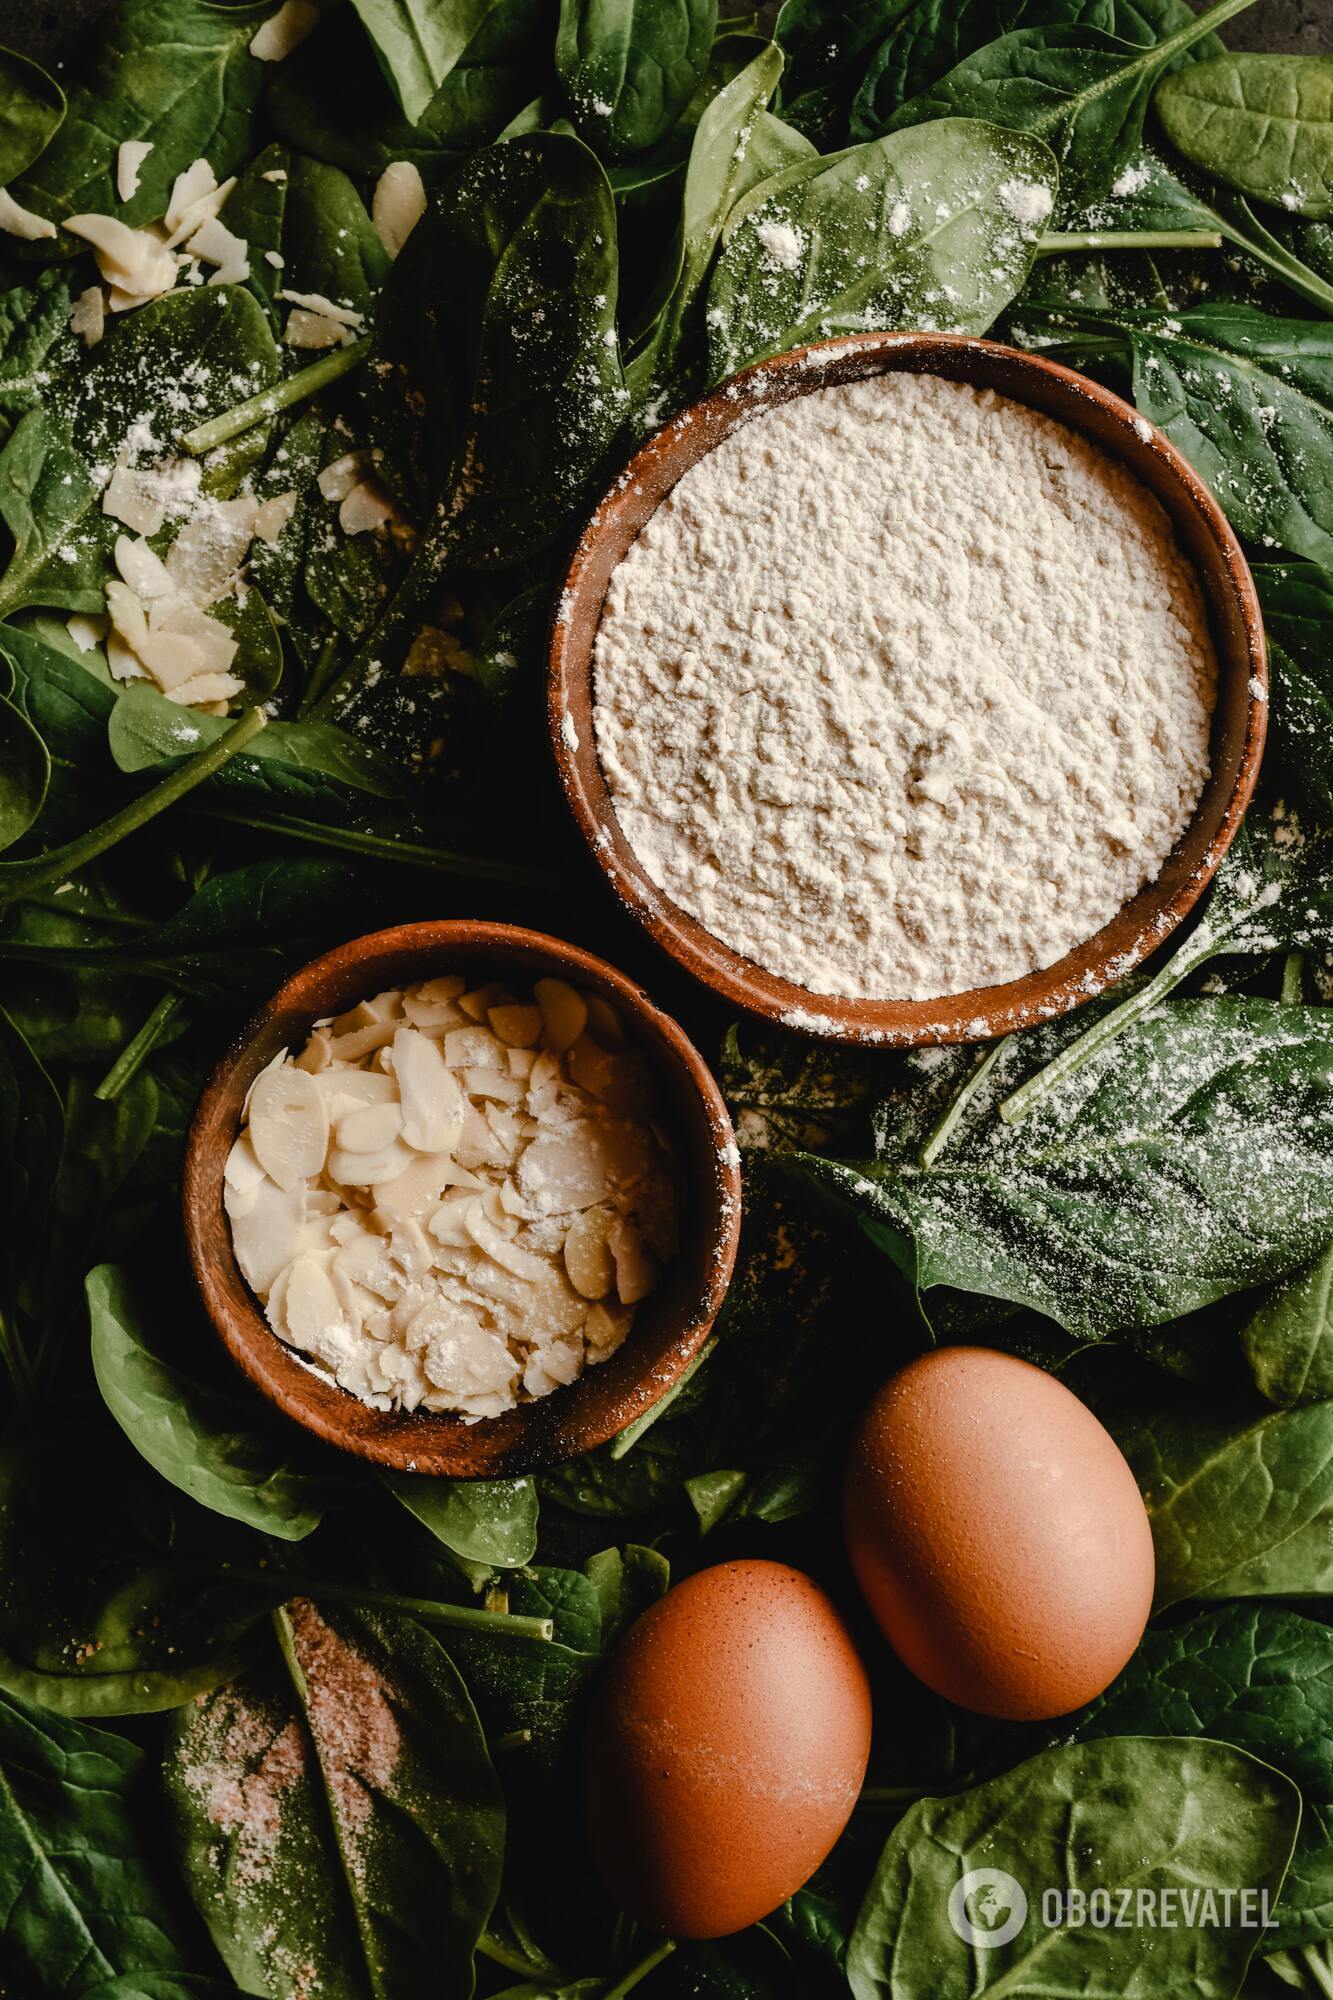 Homemade eggs and flour